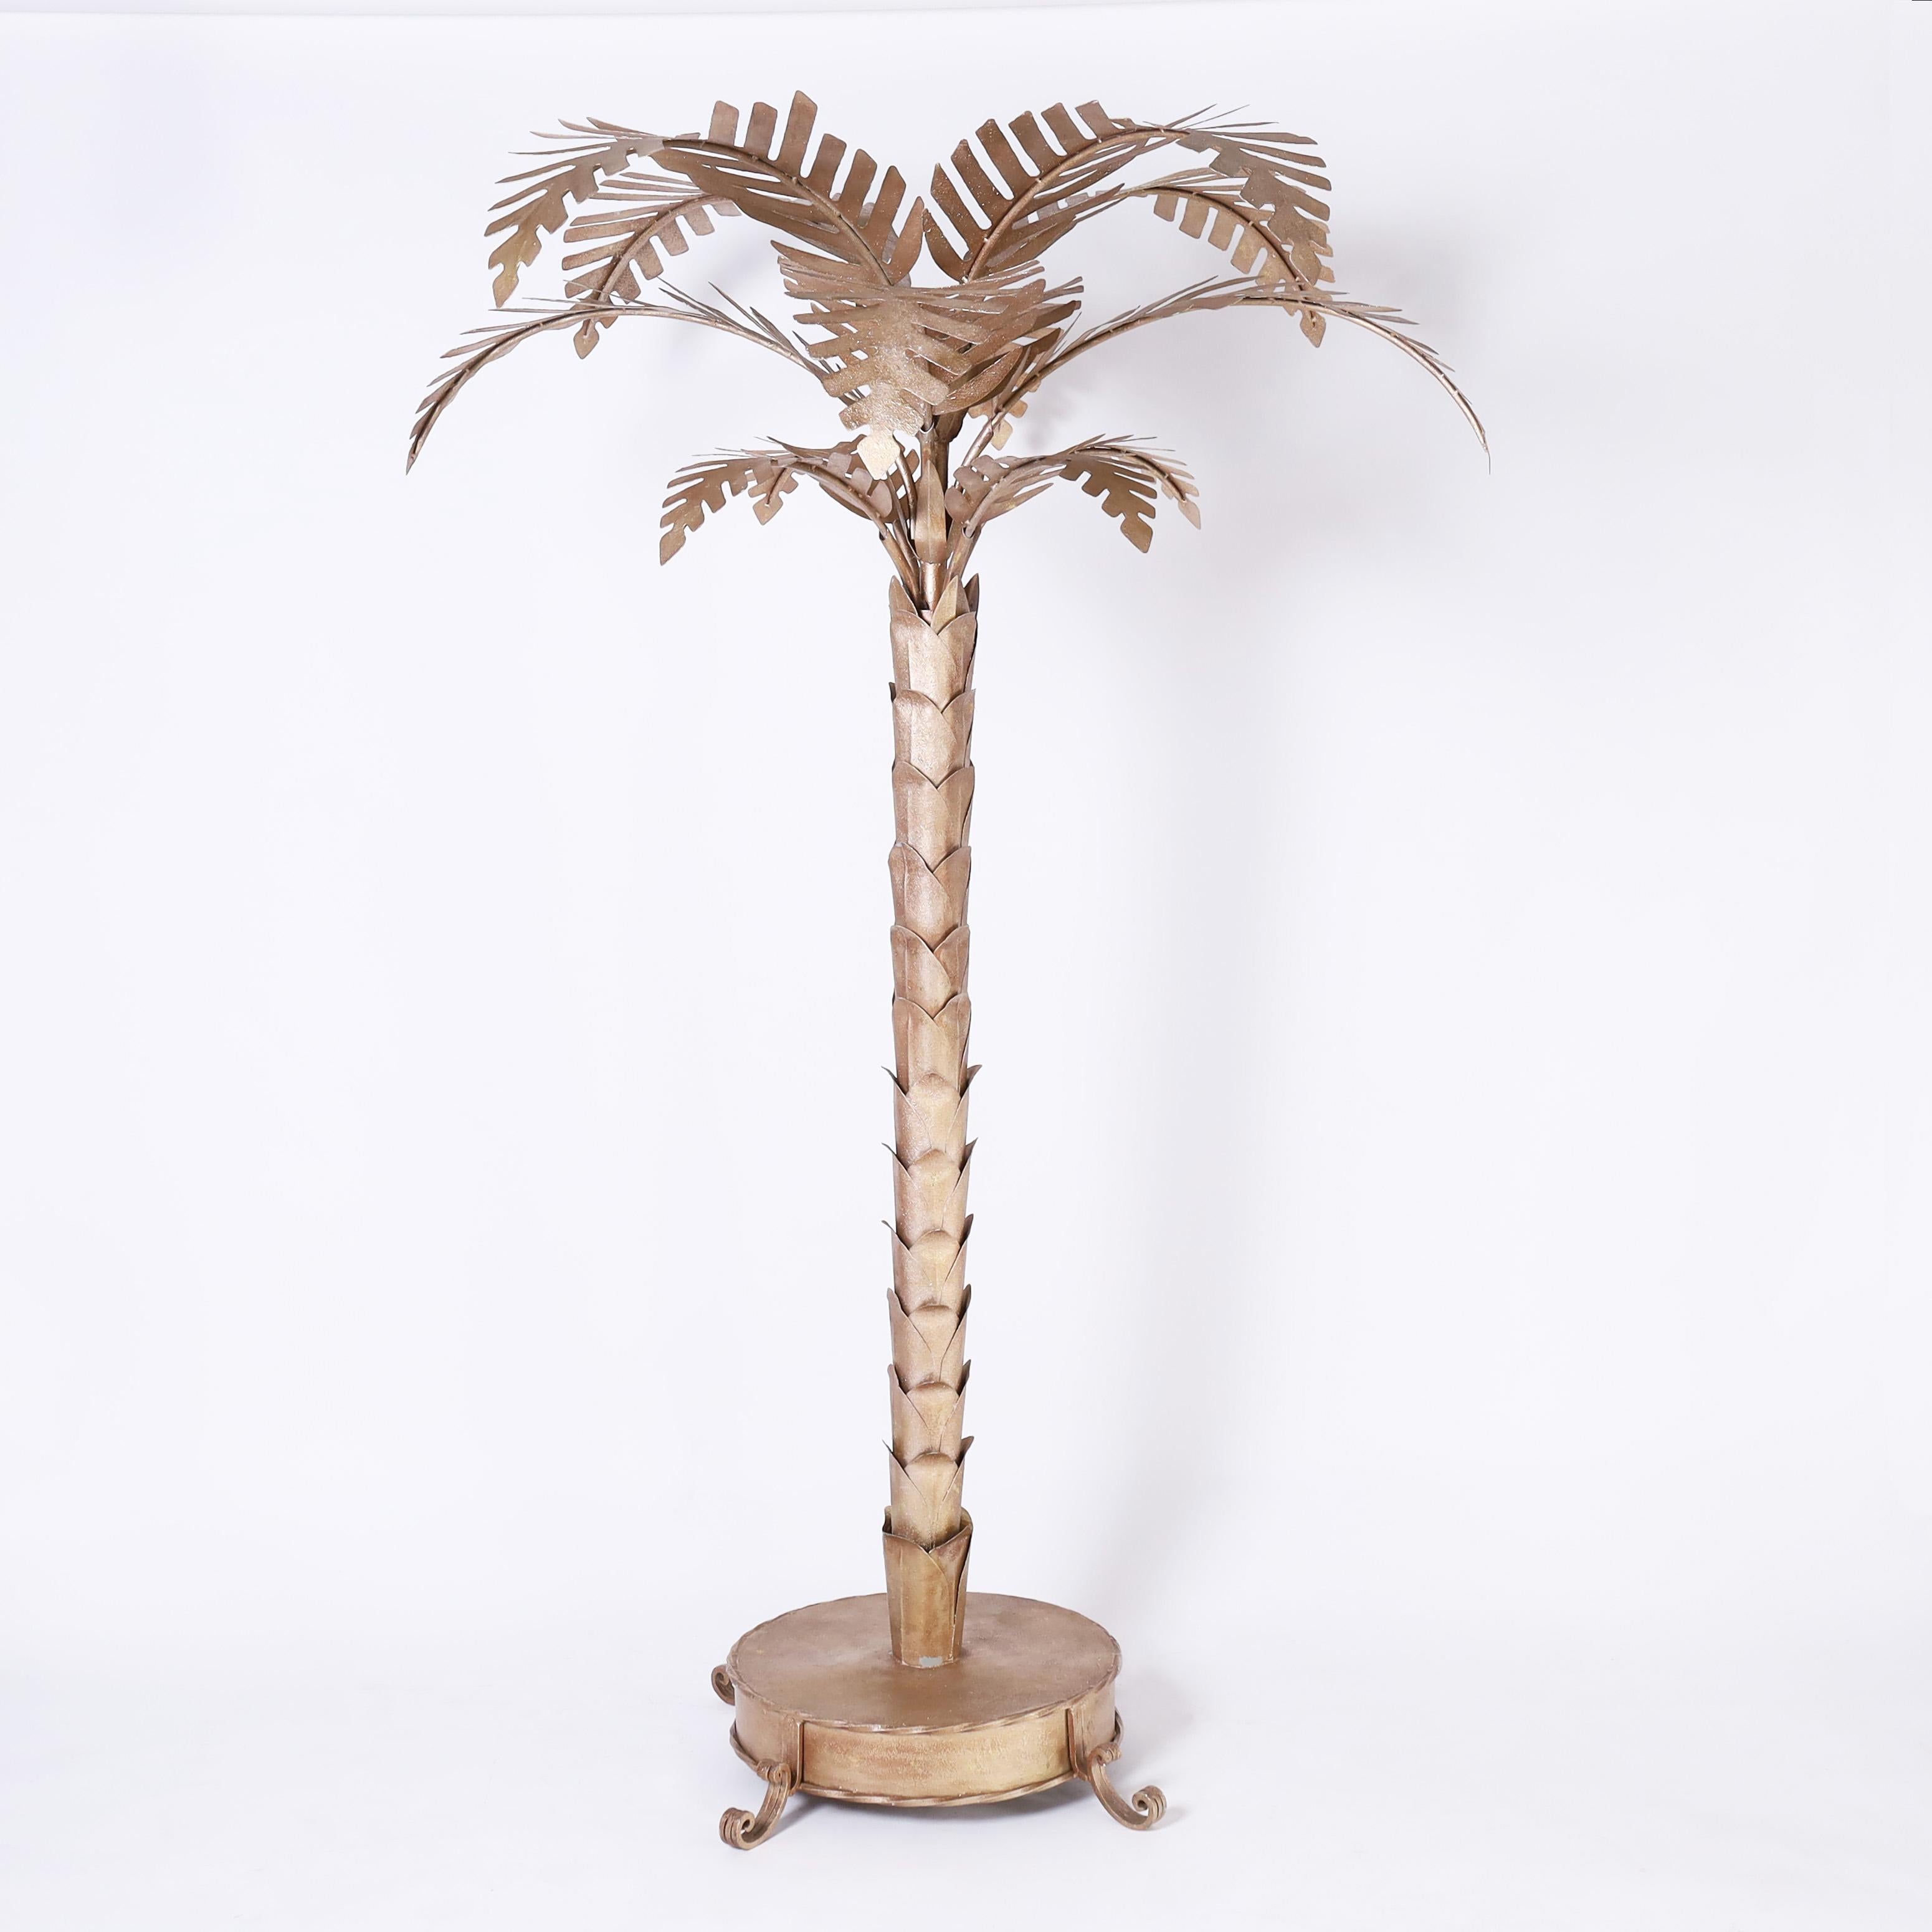 Paire de sculptures de palmiers stylisés de taille réelle, datant du milieu du siècle, fabriquées à la main en métal avec une finition chic de tonalité dorée. Démontable pour faciliter l'expédition.